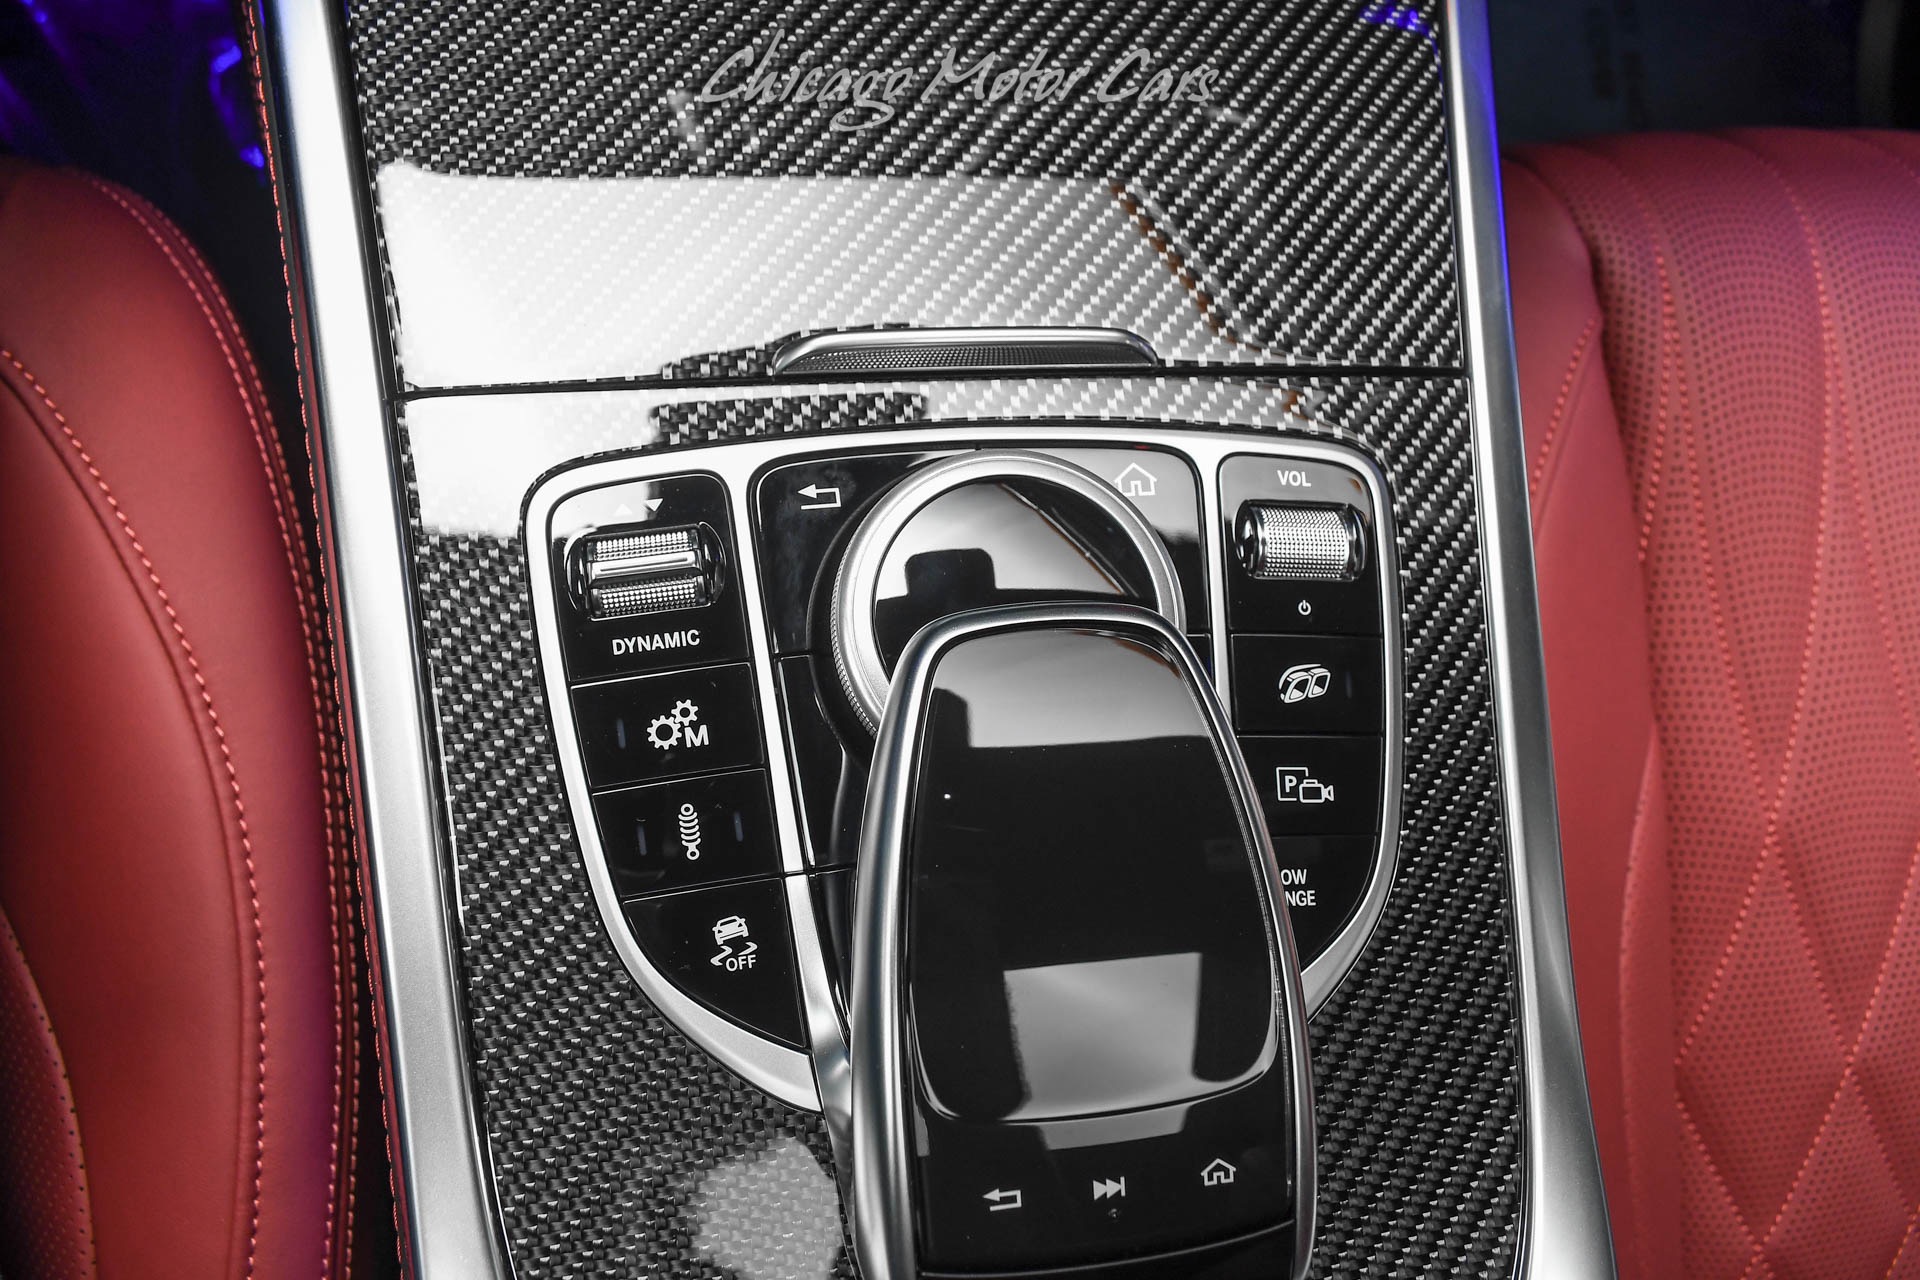 Used-2021-Mercedes-Benz-G63-AMG-4Matic-SUV-G-Manufaktur-Interior-Pkg-Plus-Night-Pkg